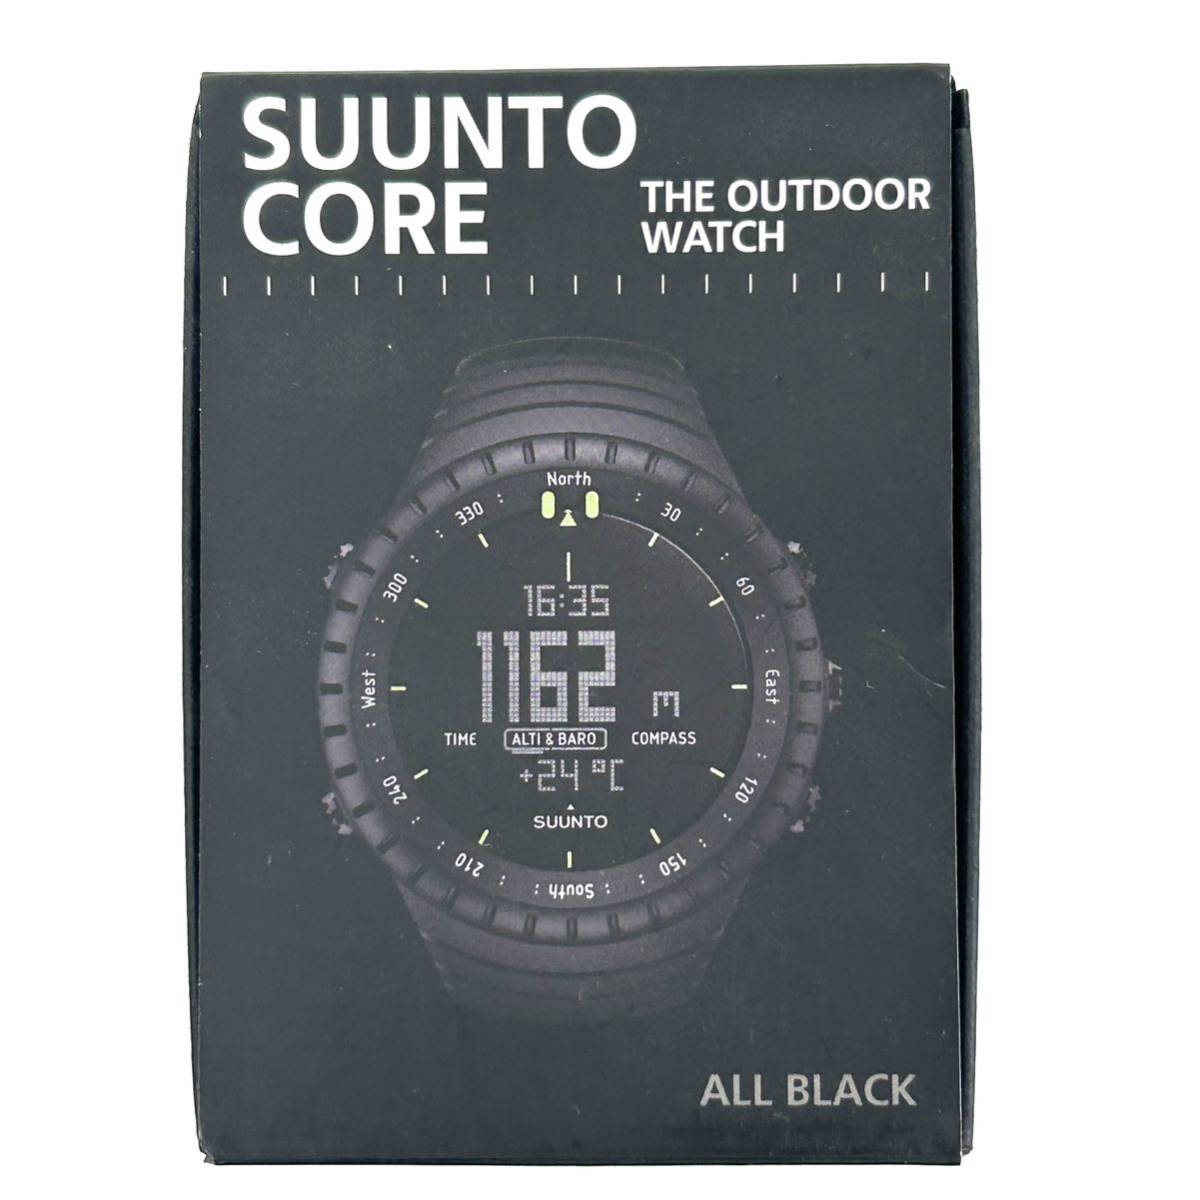 SUUNTO CORE スントコア ALL BLACK/クォーツ腕時計/デジタル/ラバー/BLK